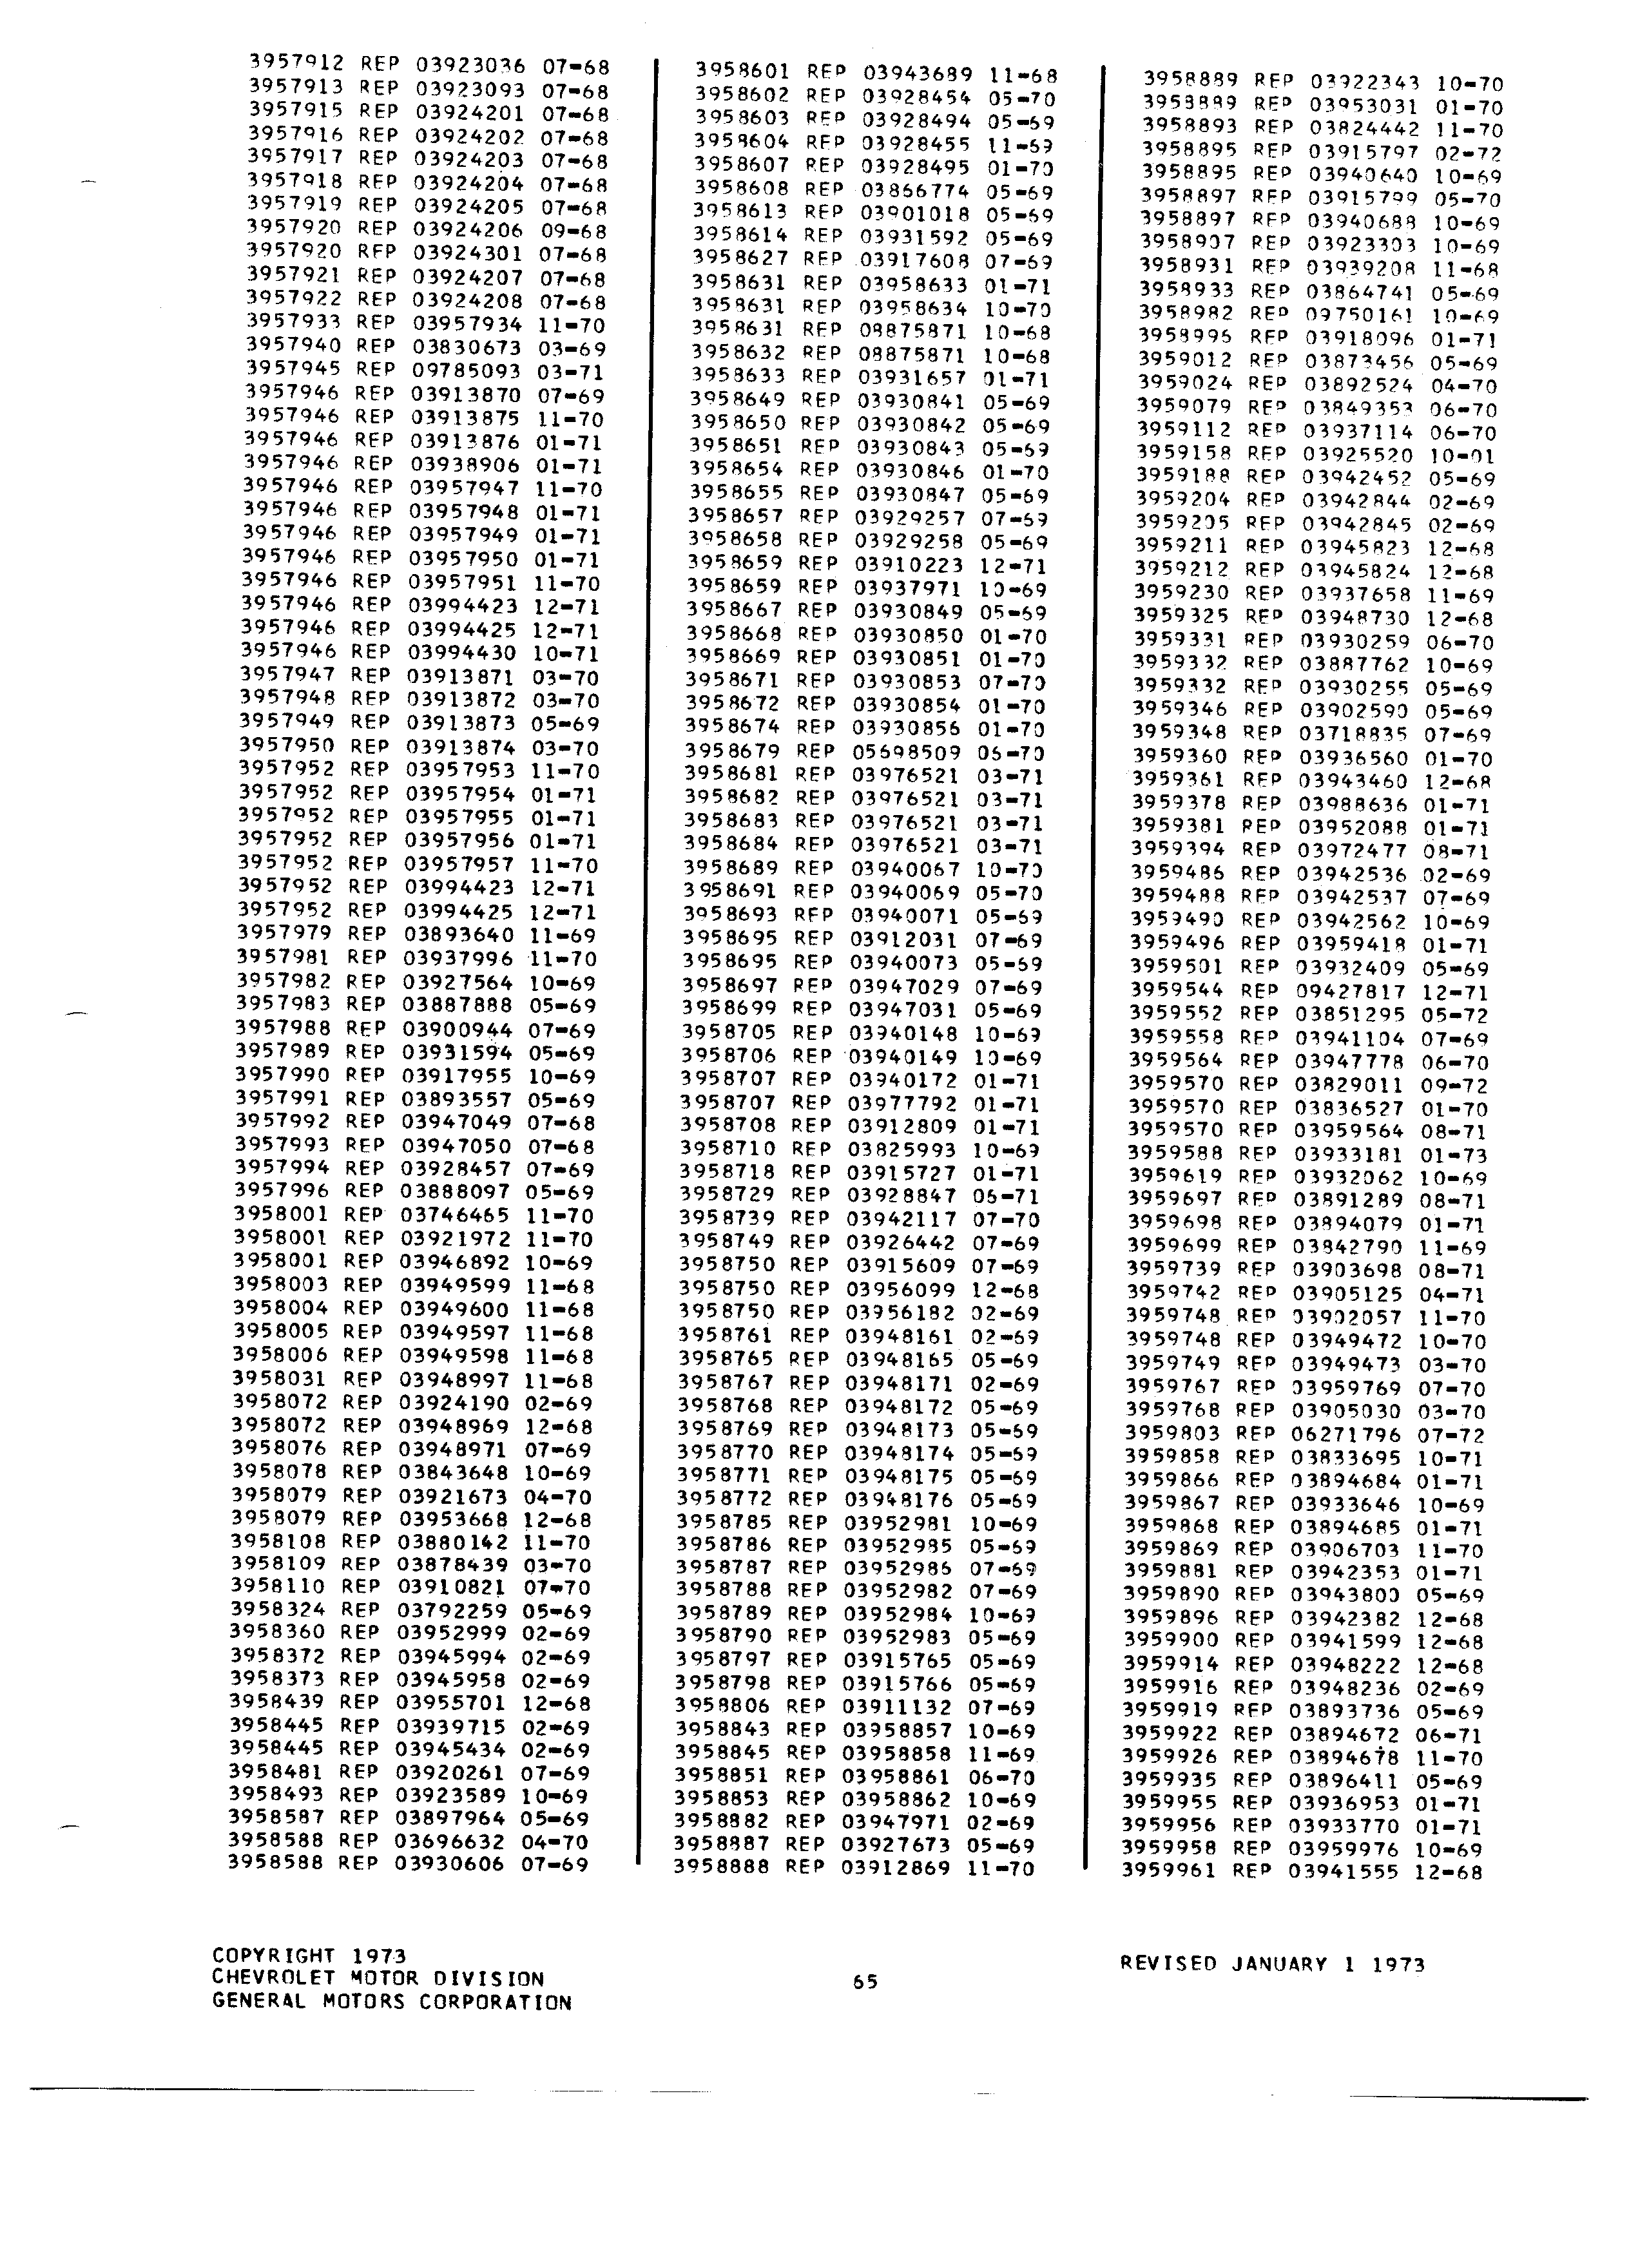 Parts History Catalog P&A 30H January 1973